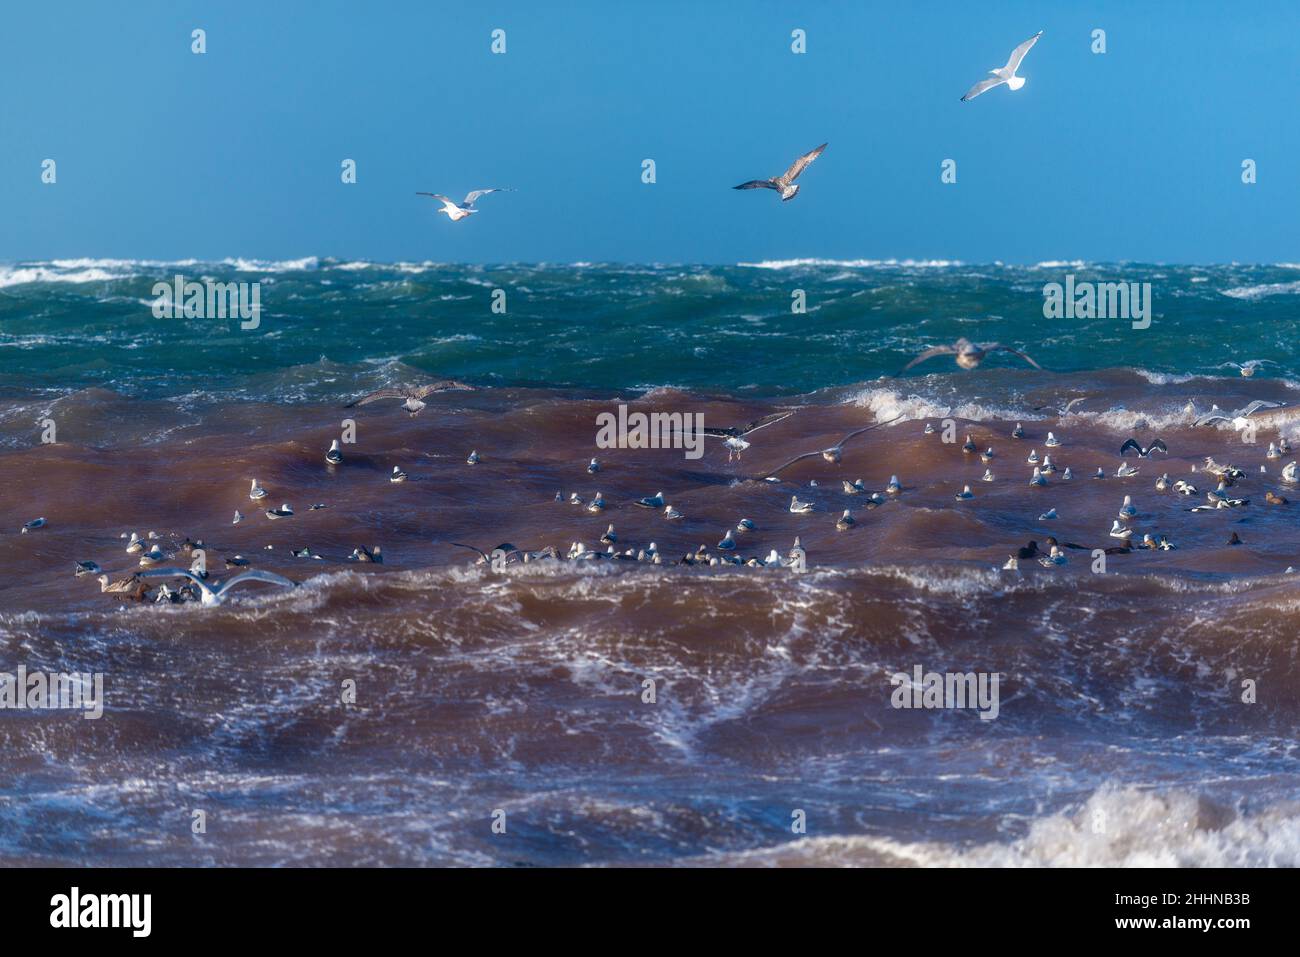 Wasservögel auf der Suche nach einem ruhigeren Ort bei stürmischen Wetterbedingungen, Nordseeinsel Helgoland, Norddeutschland, Mitteleuropa Stockfoto